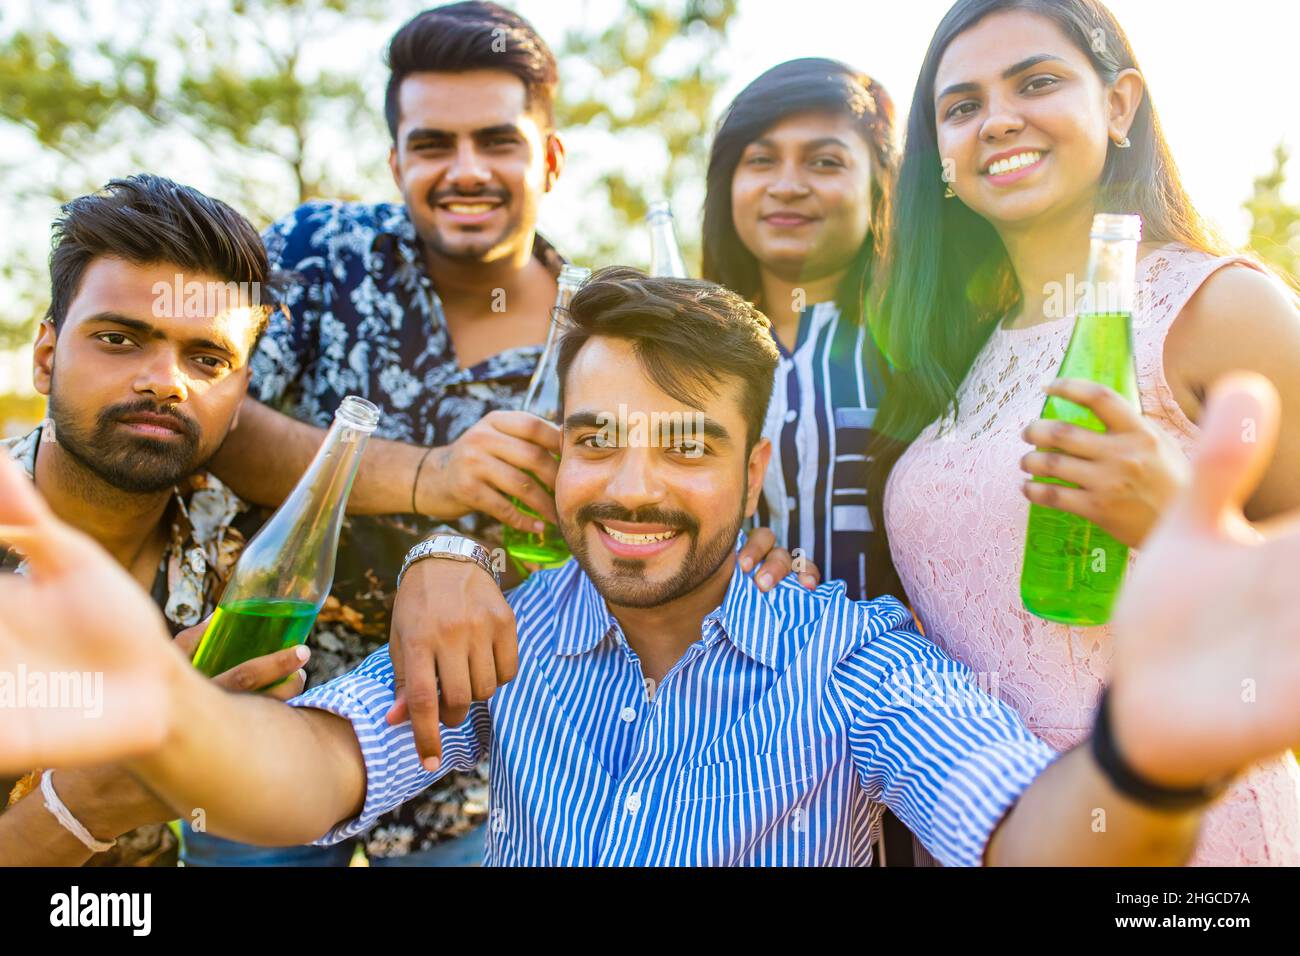 Multiethnische Menschen verbringen Zeit miteinander, um Selfie mit Limonade zu machen Stockfoto